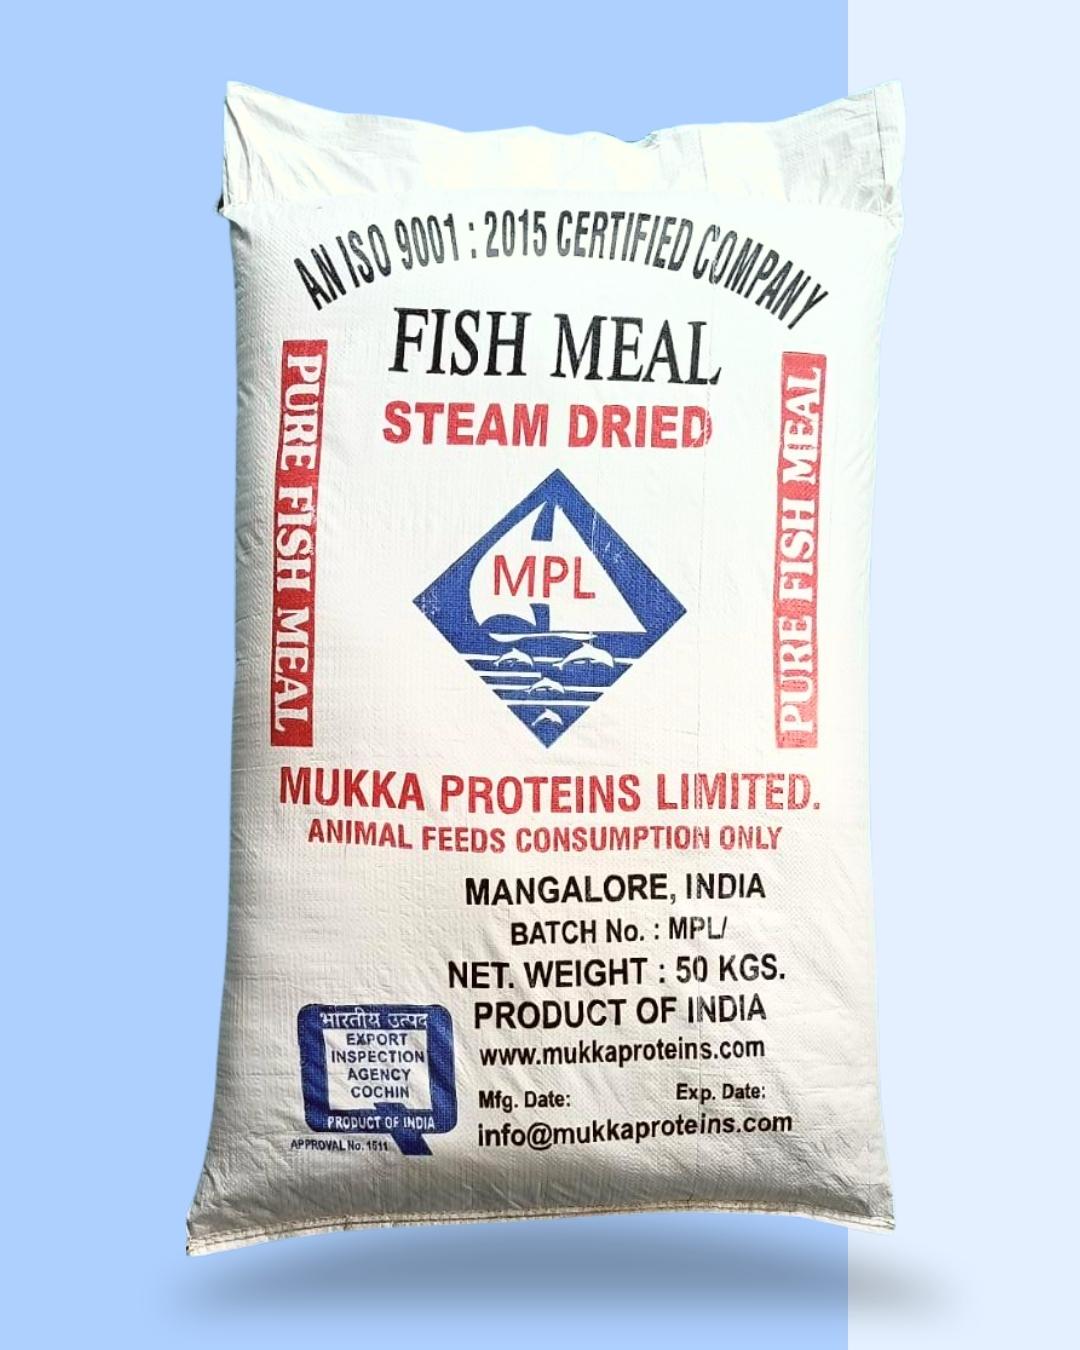 mukka proteins fish meal packaging, mukka proteins fish meal package, fish meal export, fish meal pack